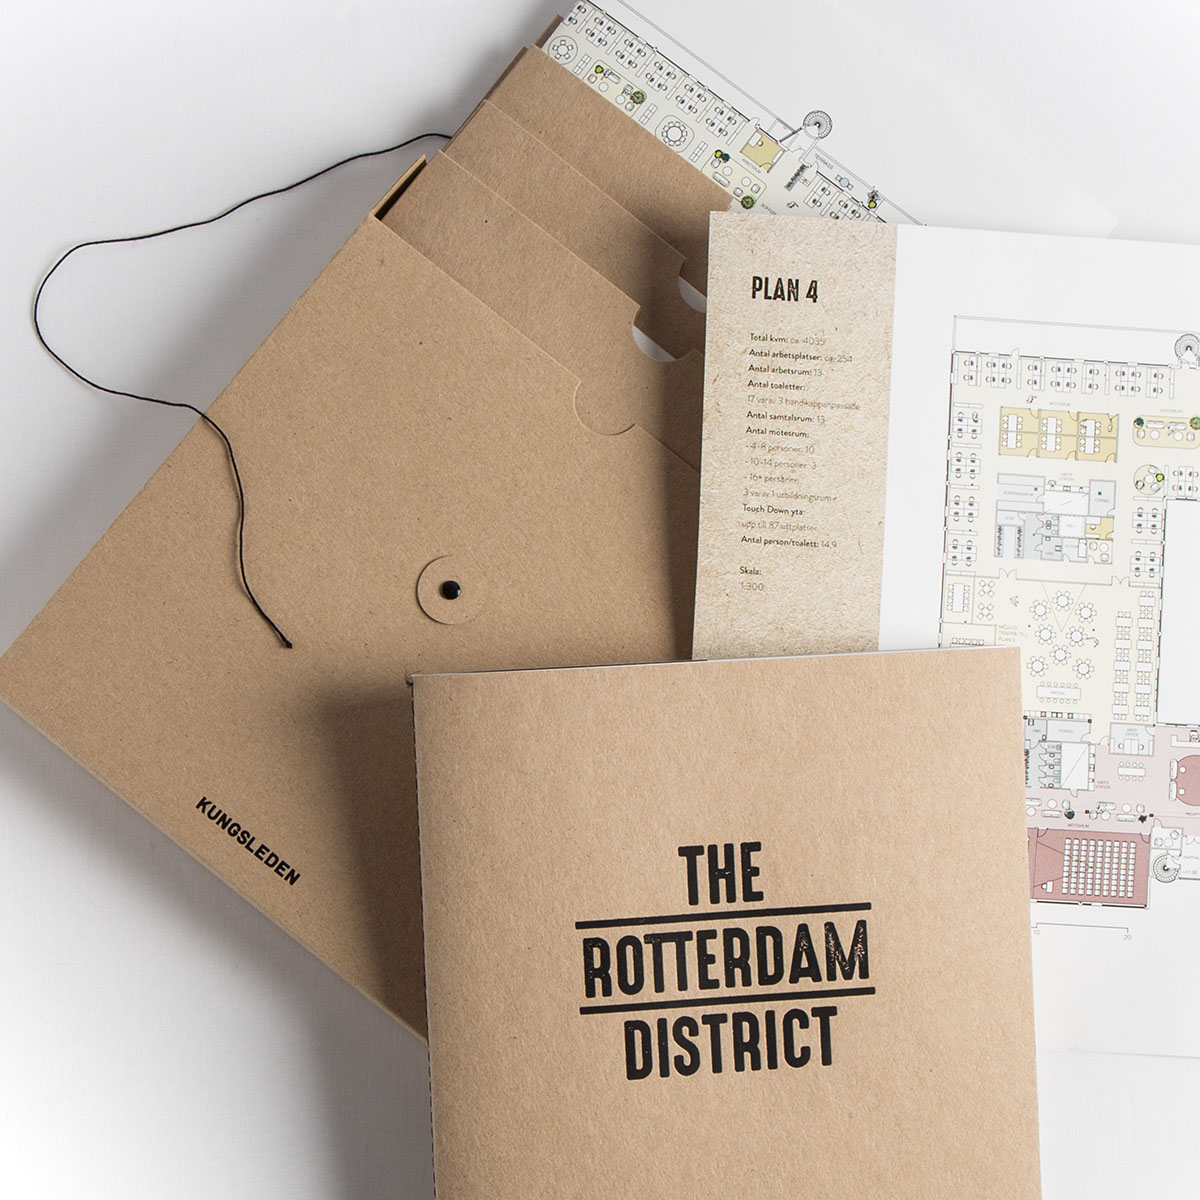 the rotterdam district - Profilprodukter i kartong med eget tryck och design